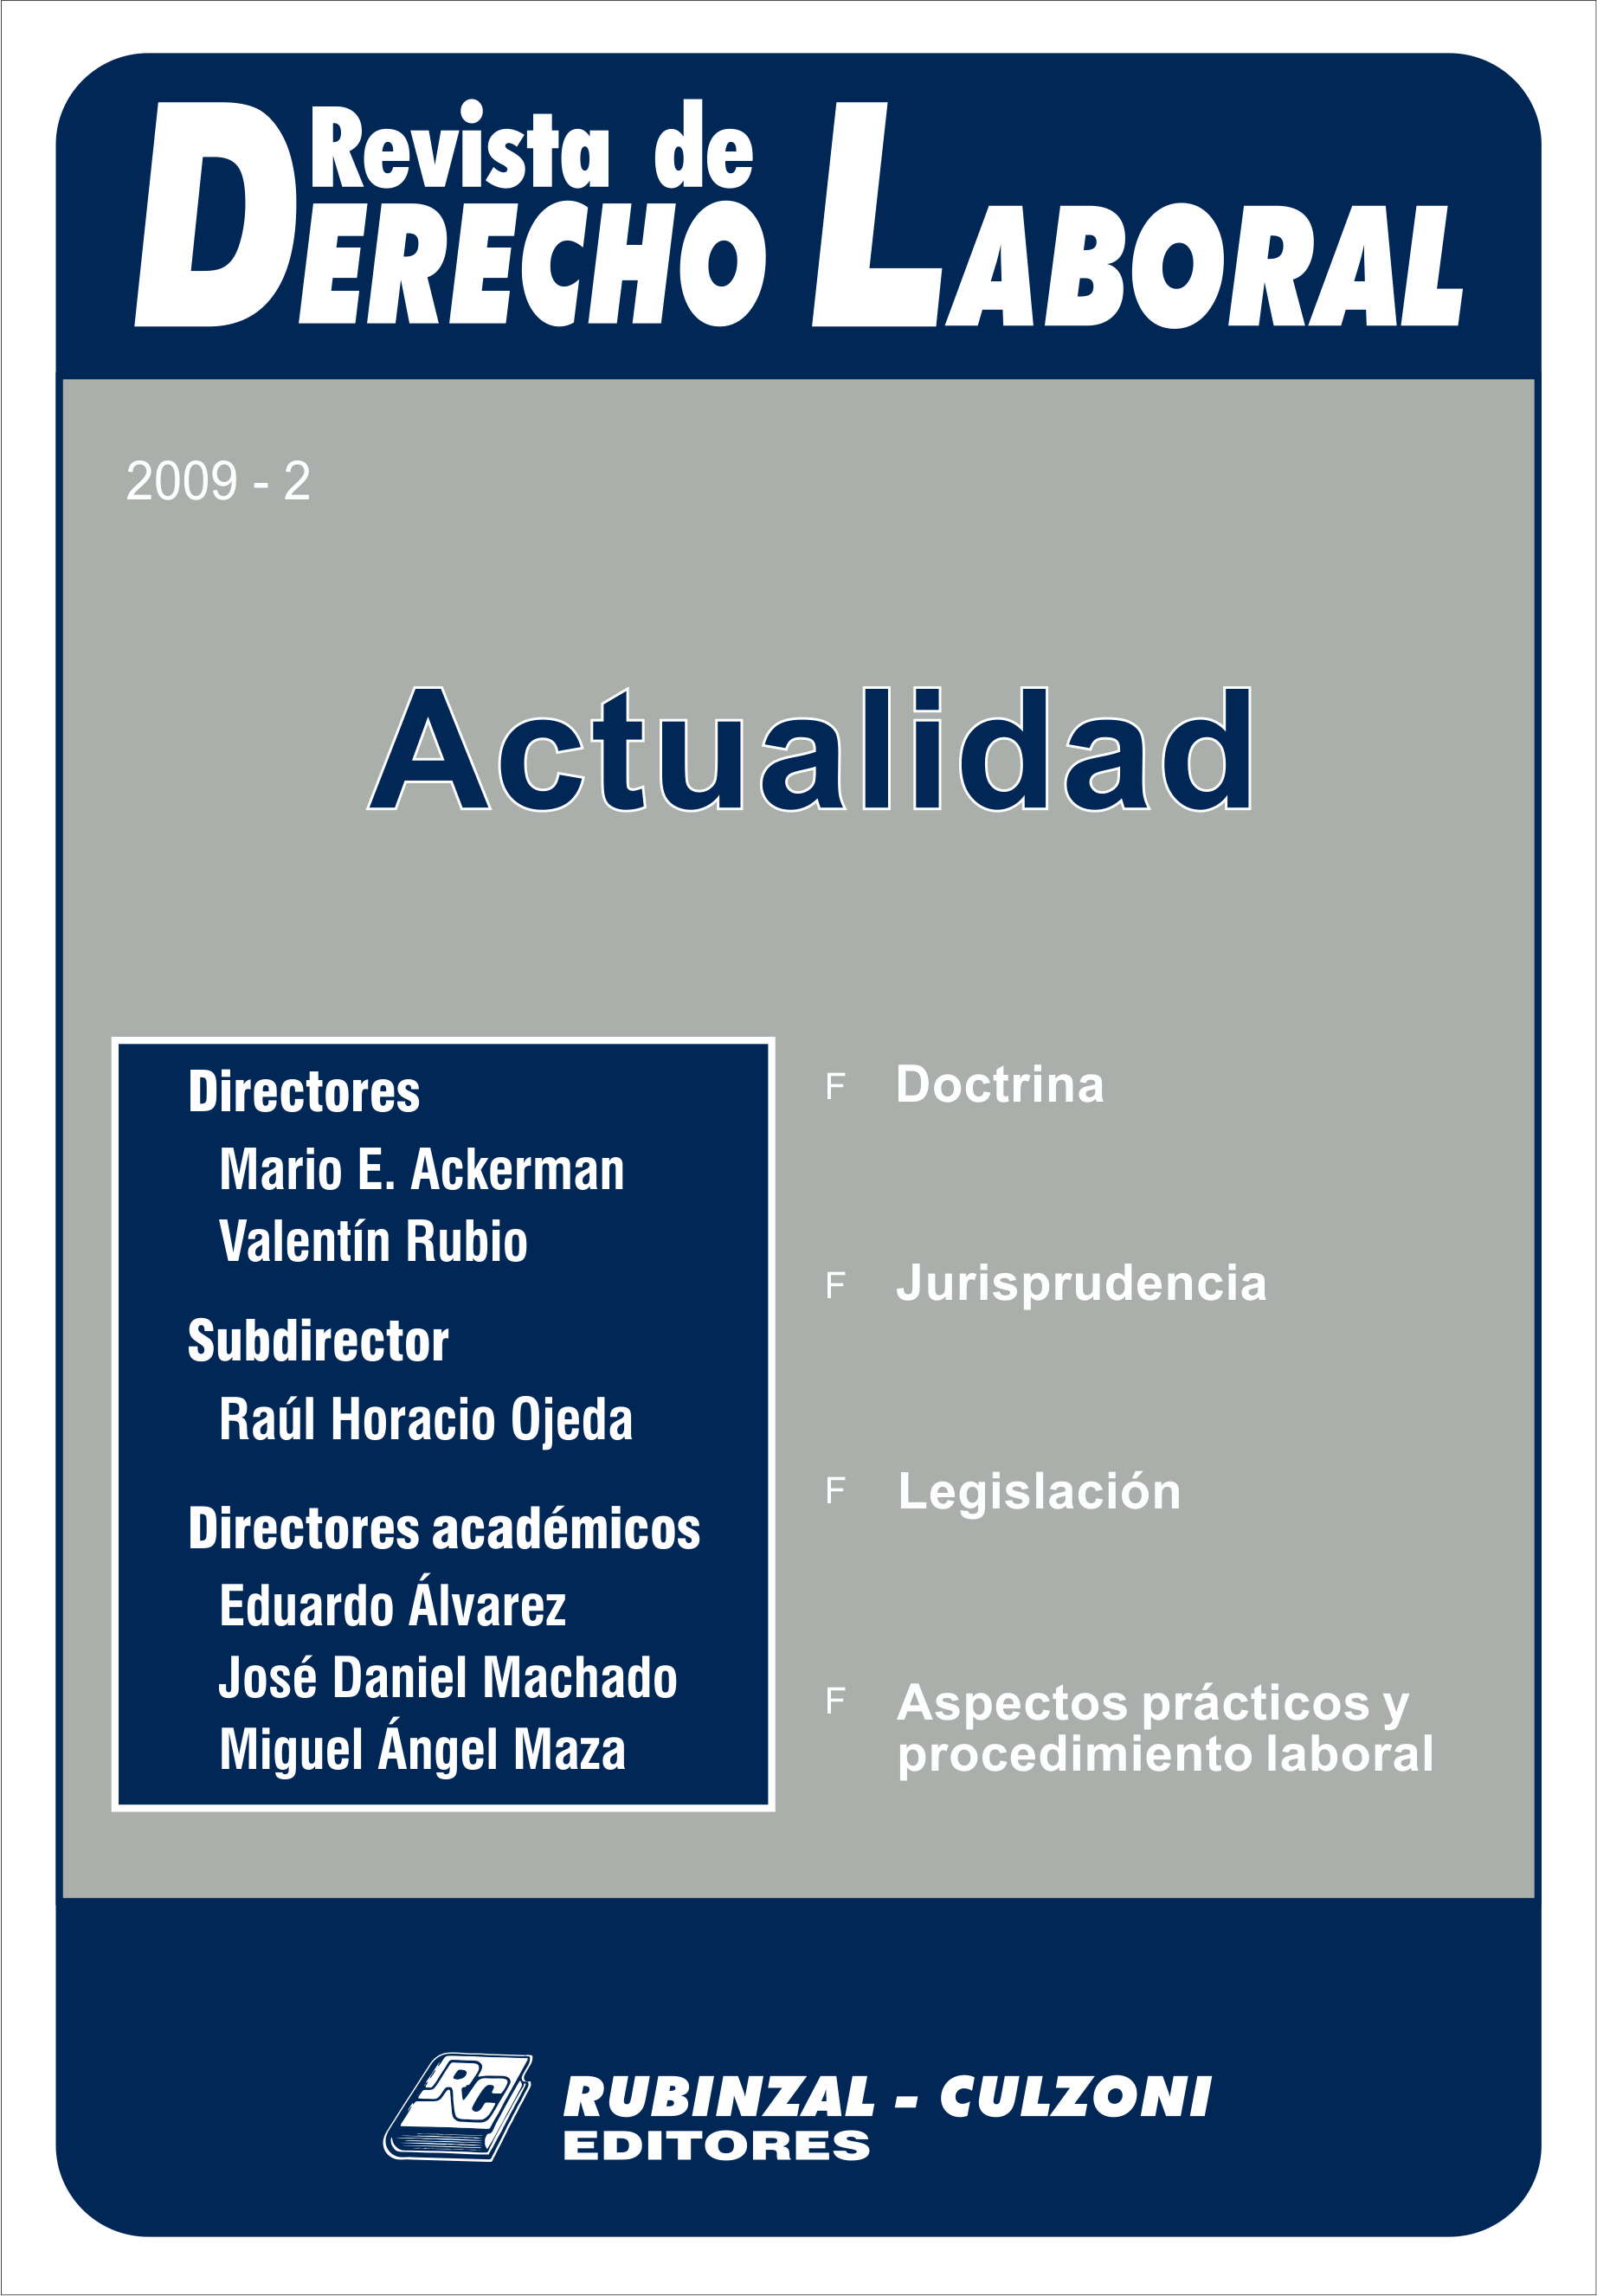 Revista de Derecho Laboral Actualidad - Año 2009 - 2.